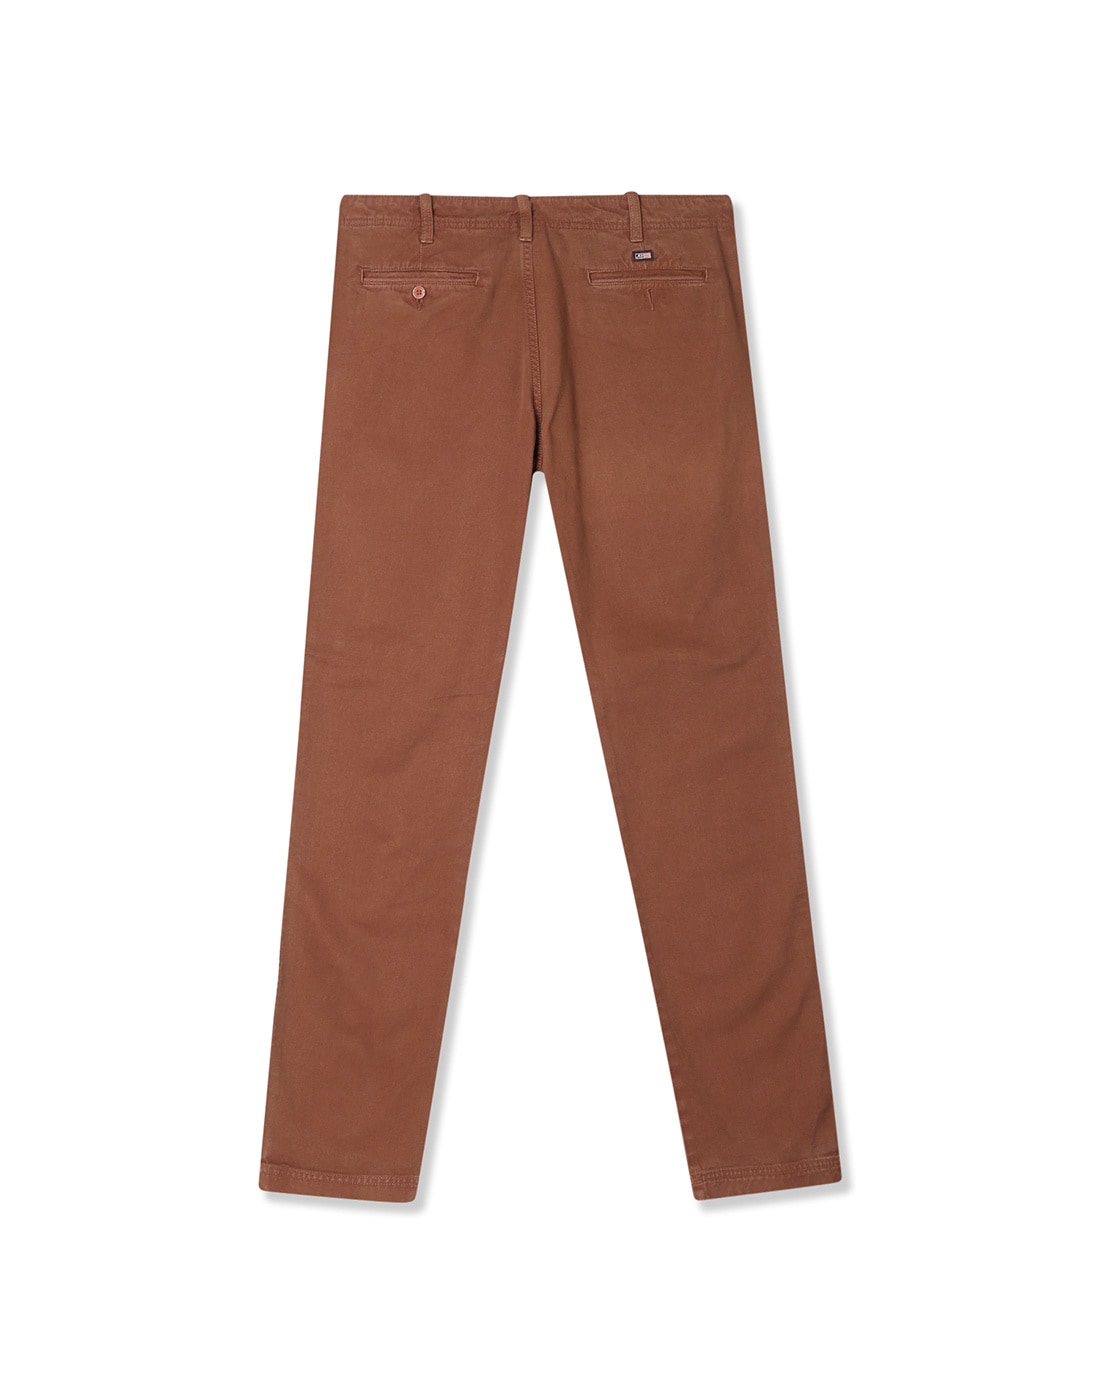 Buy Arrow Sports Brown Chrysler Slim Fit Self Print Trousers Online